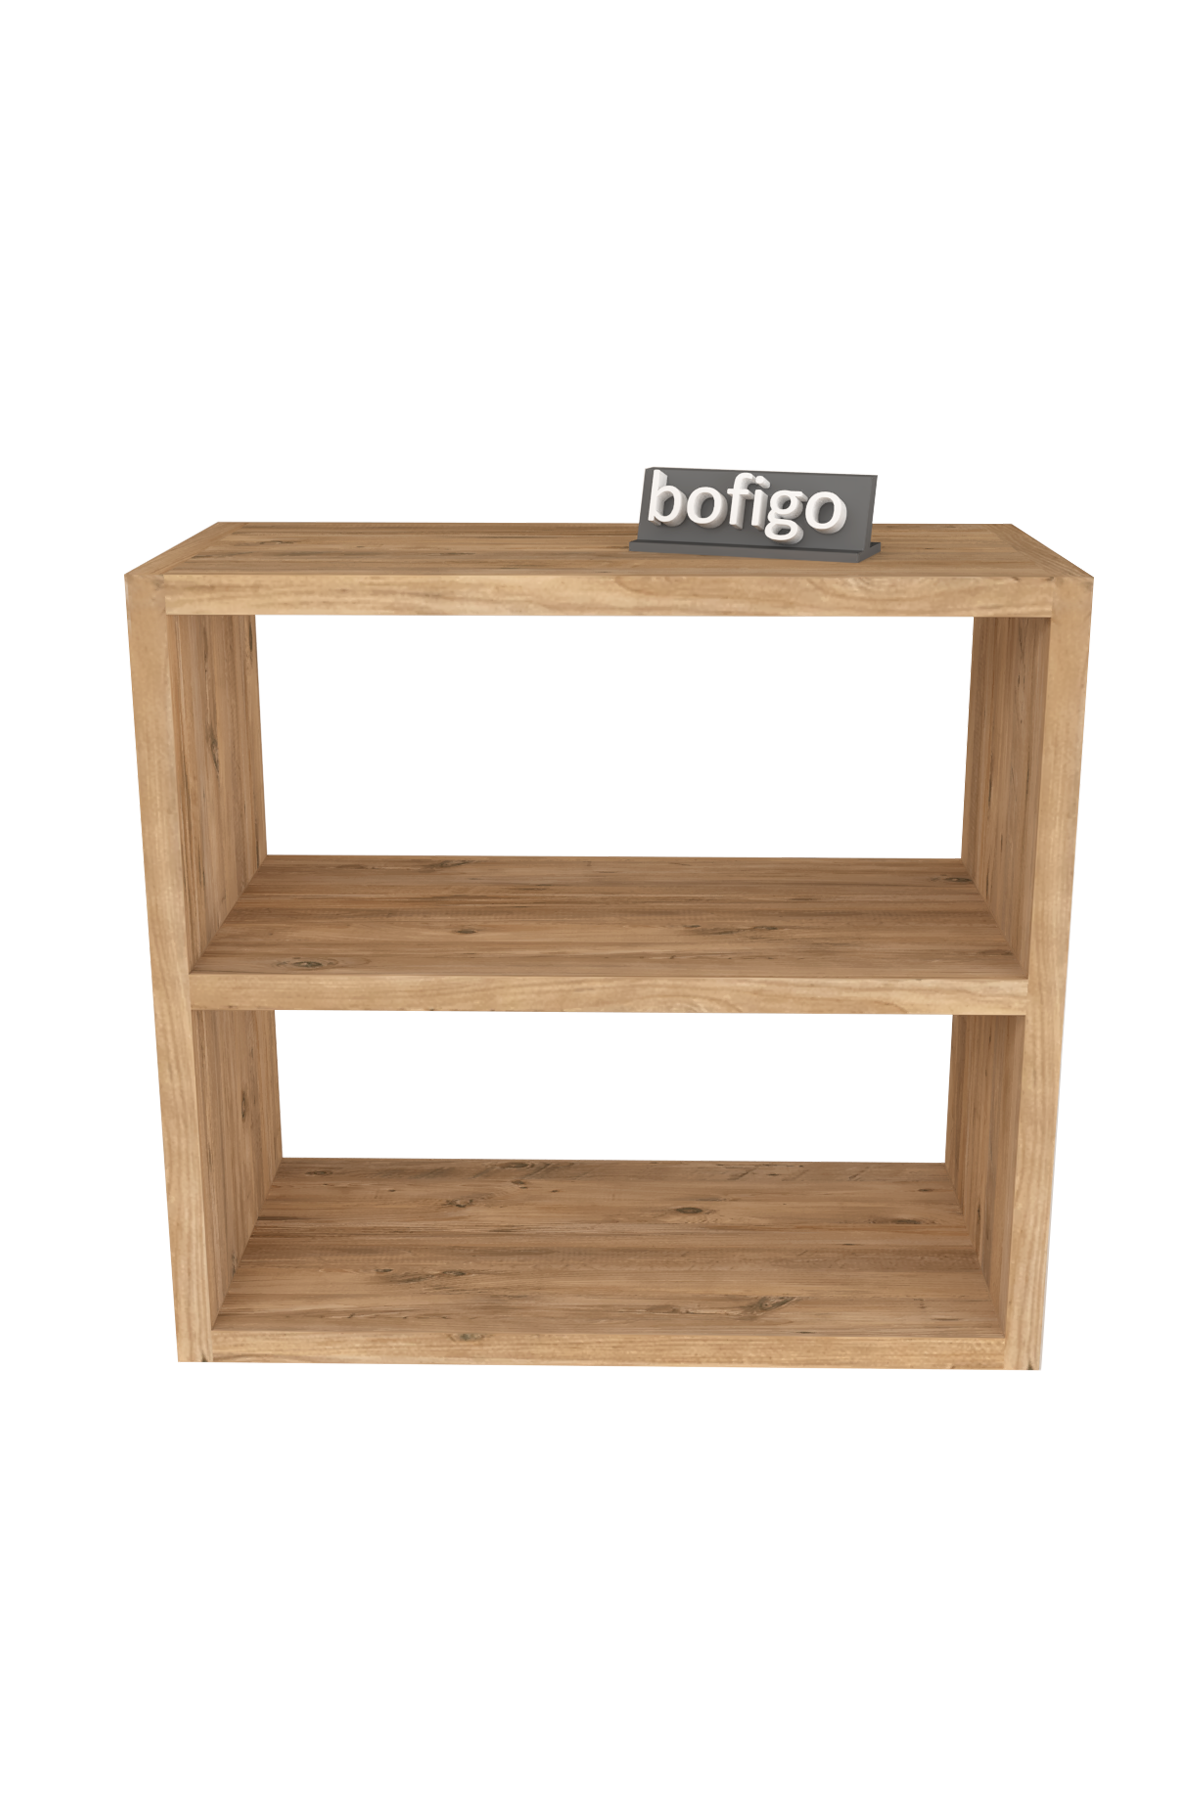 Bofigo Counter Top Shelf Spice Rack  Pine